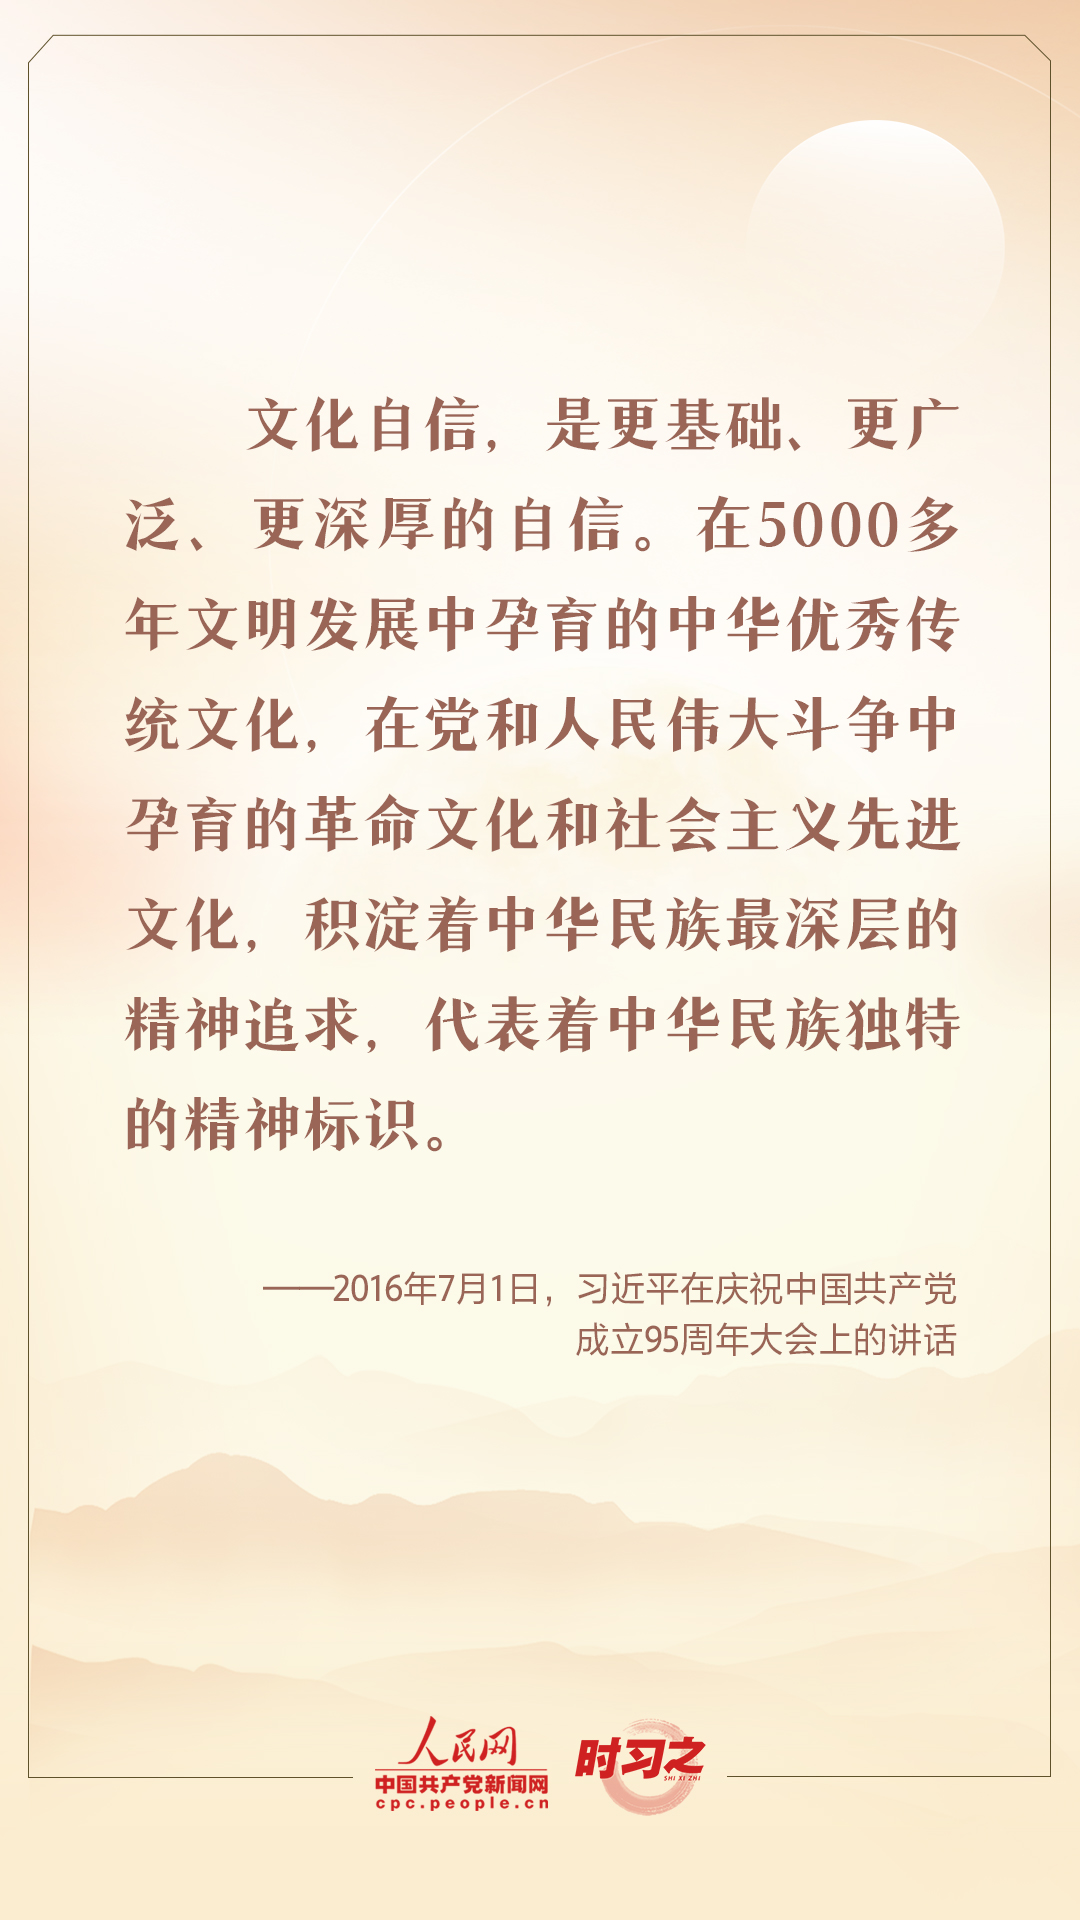 迎中秋 话传统 跟总书记一起坚定中华文化自信